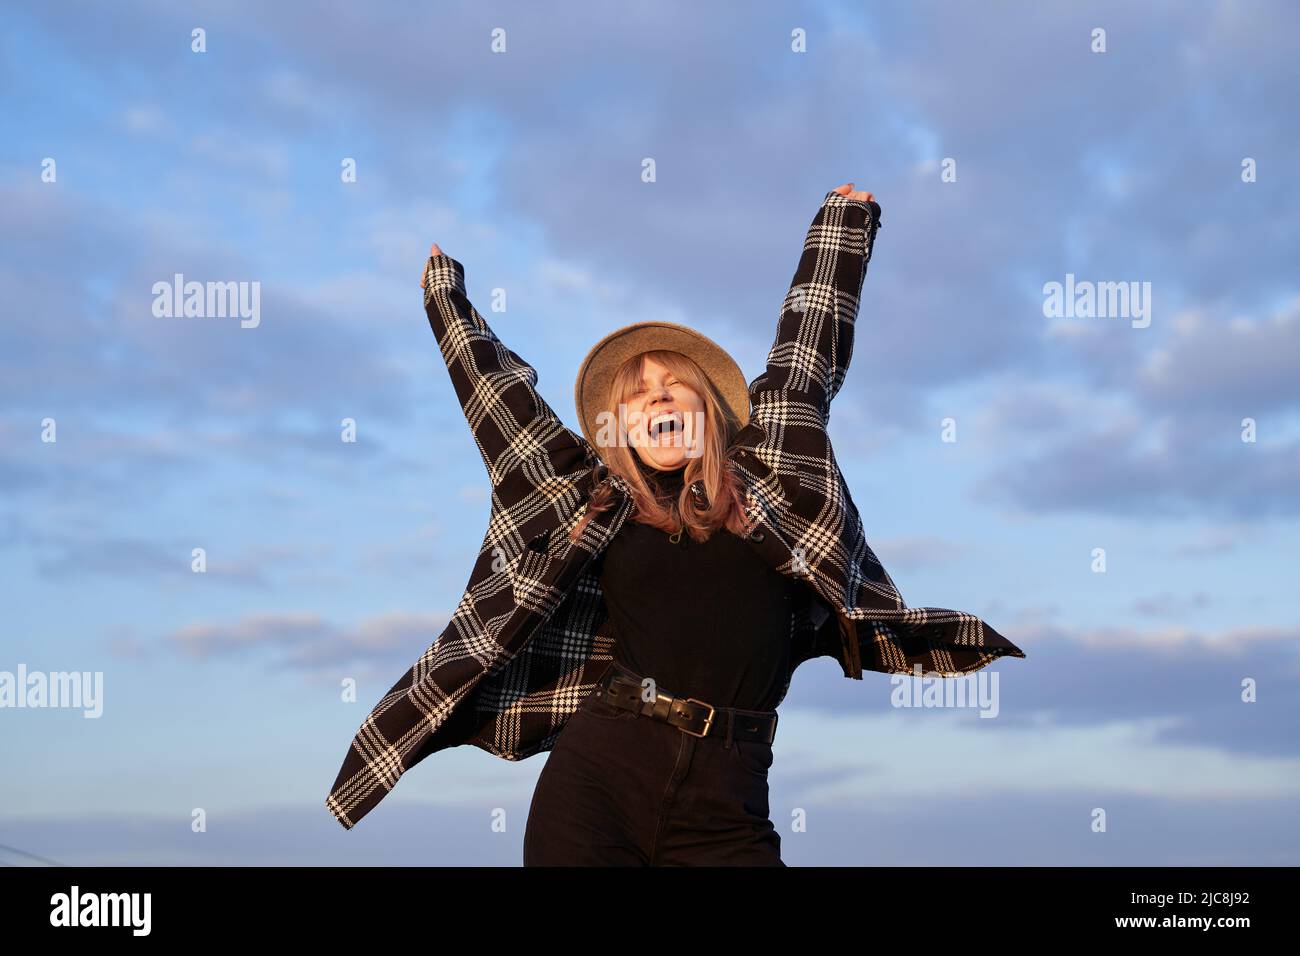 Giovane ragazza eccitata hipster in cappello, jeans neri e maglietta che ballano sentendosi gioiosa o spensierata emozione di fronte al cielo blu nuvoloso. Concetto trionfo, vincente, espressivo o positivo. Immagine di alta qualità Foto Stock